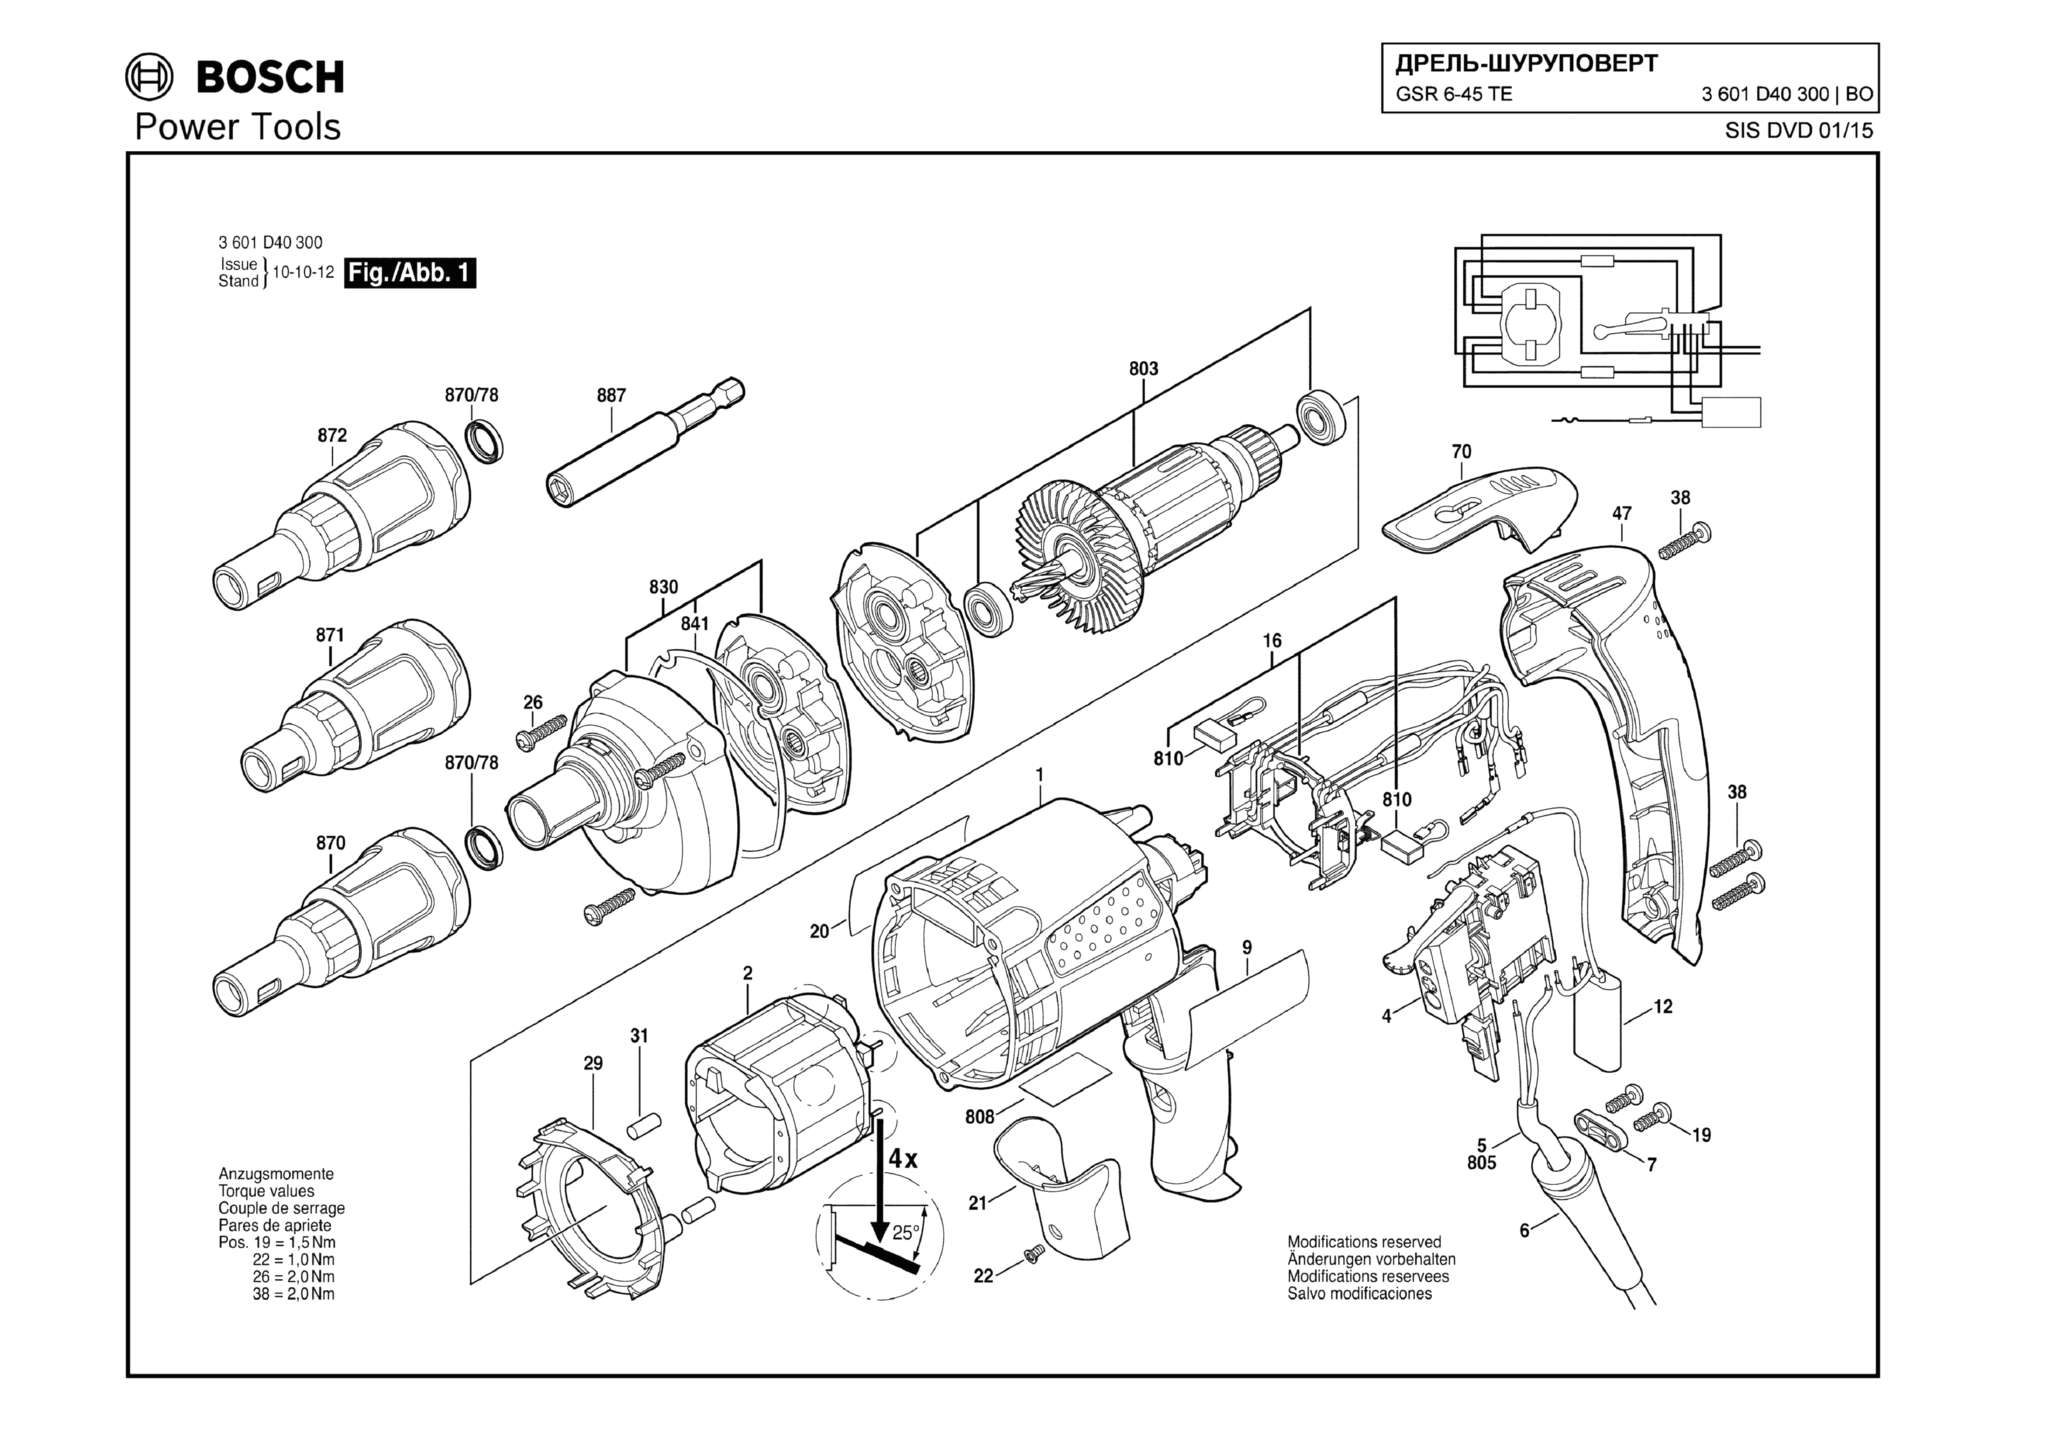 Запчасти, схема и деталировка Bosch GSR 6-45 TE (ТИП 3601D40300)